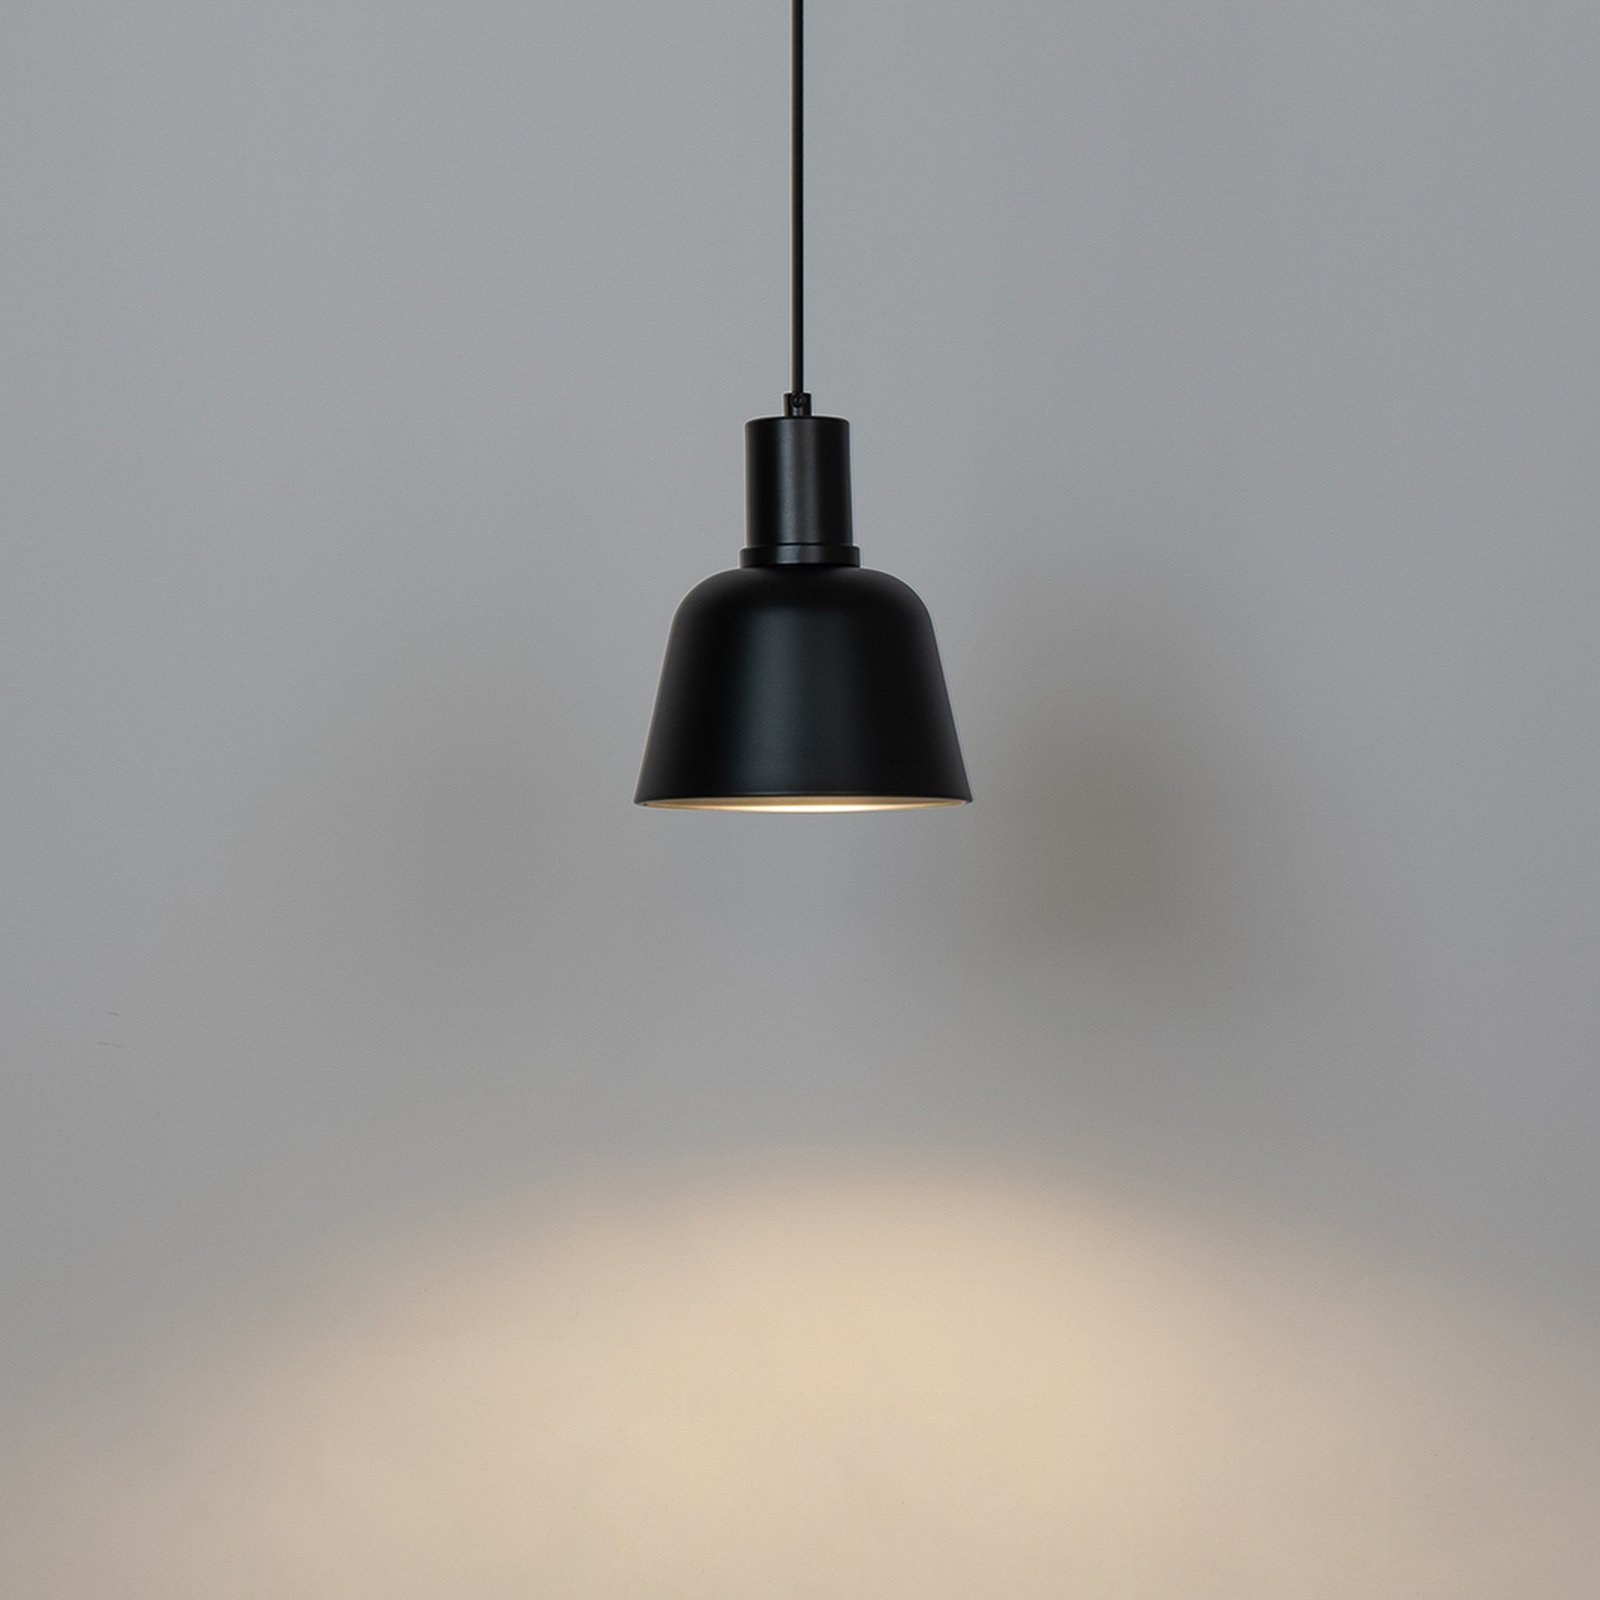 Lucande Servan-hængelampe, sort, 1 lyskilde